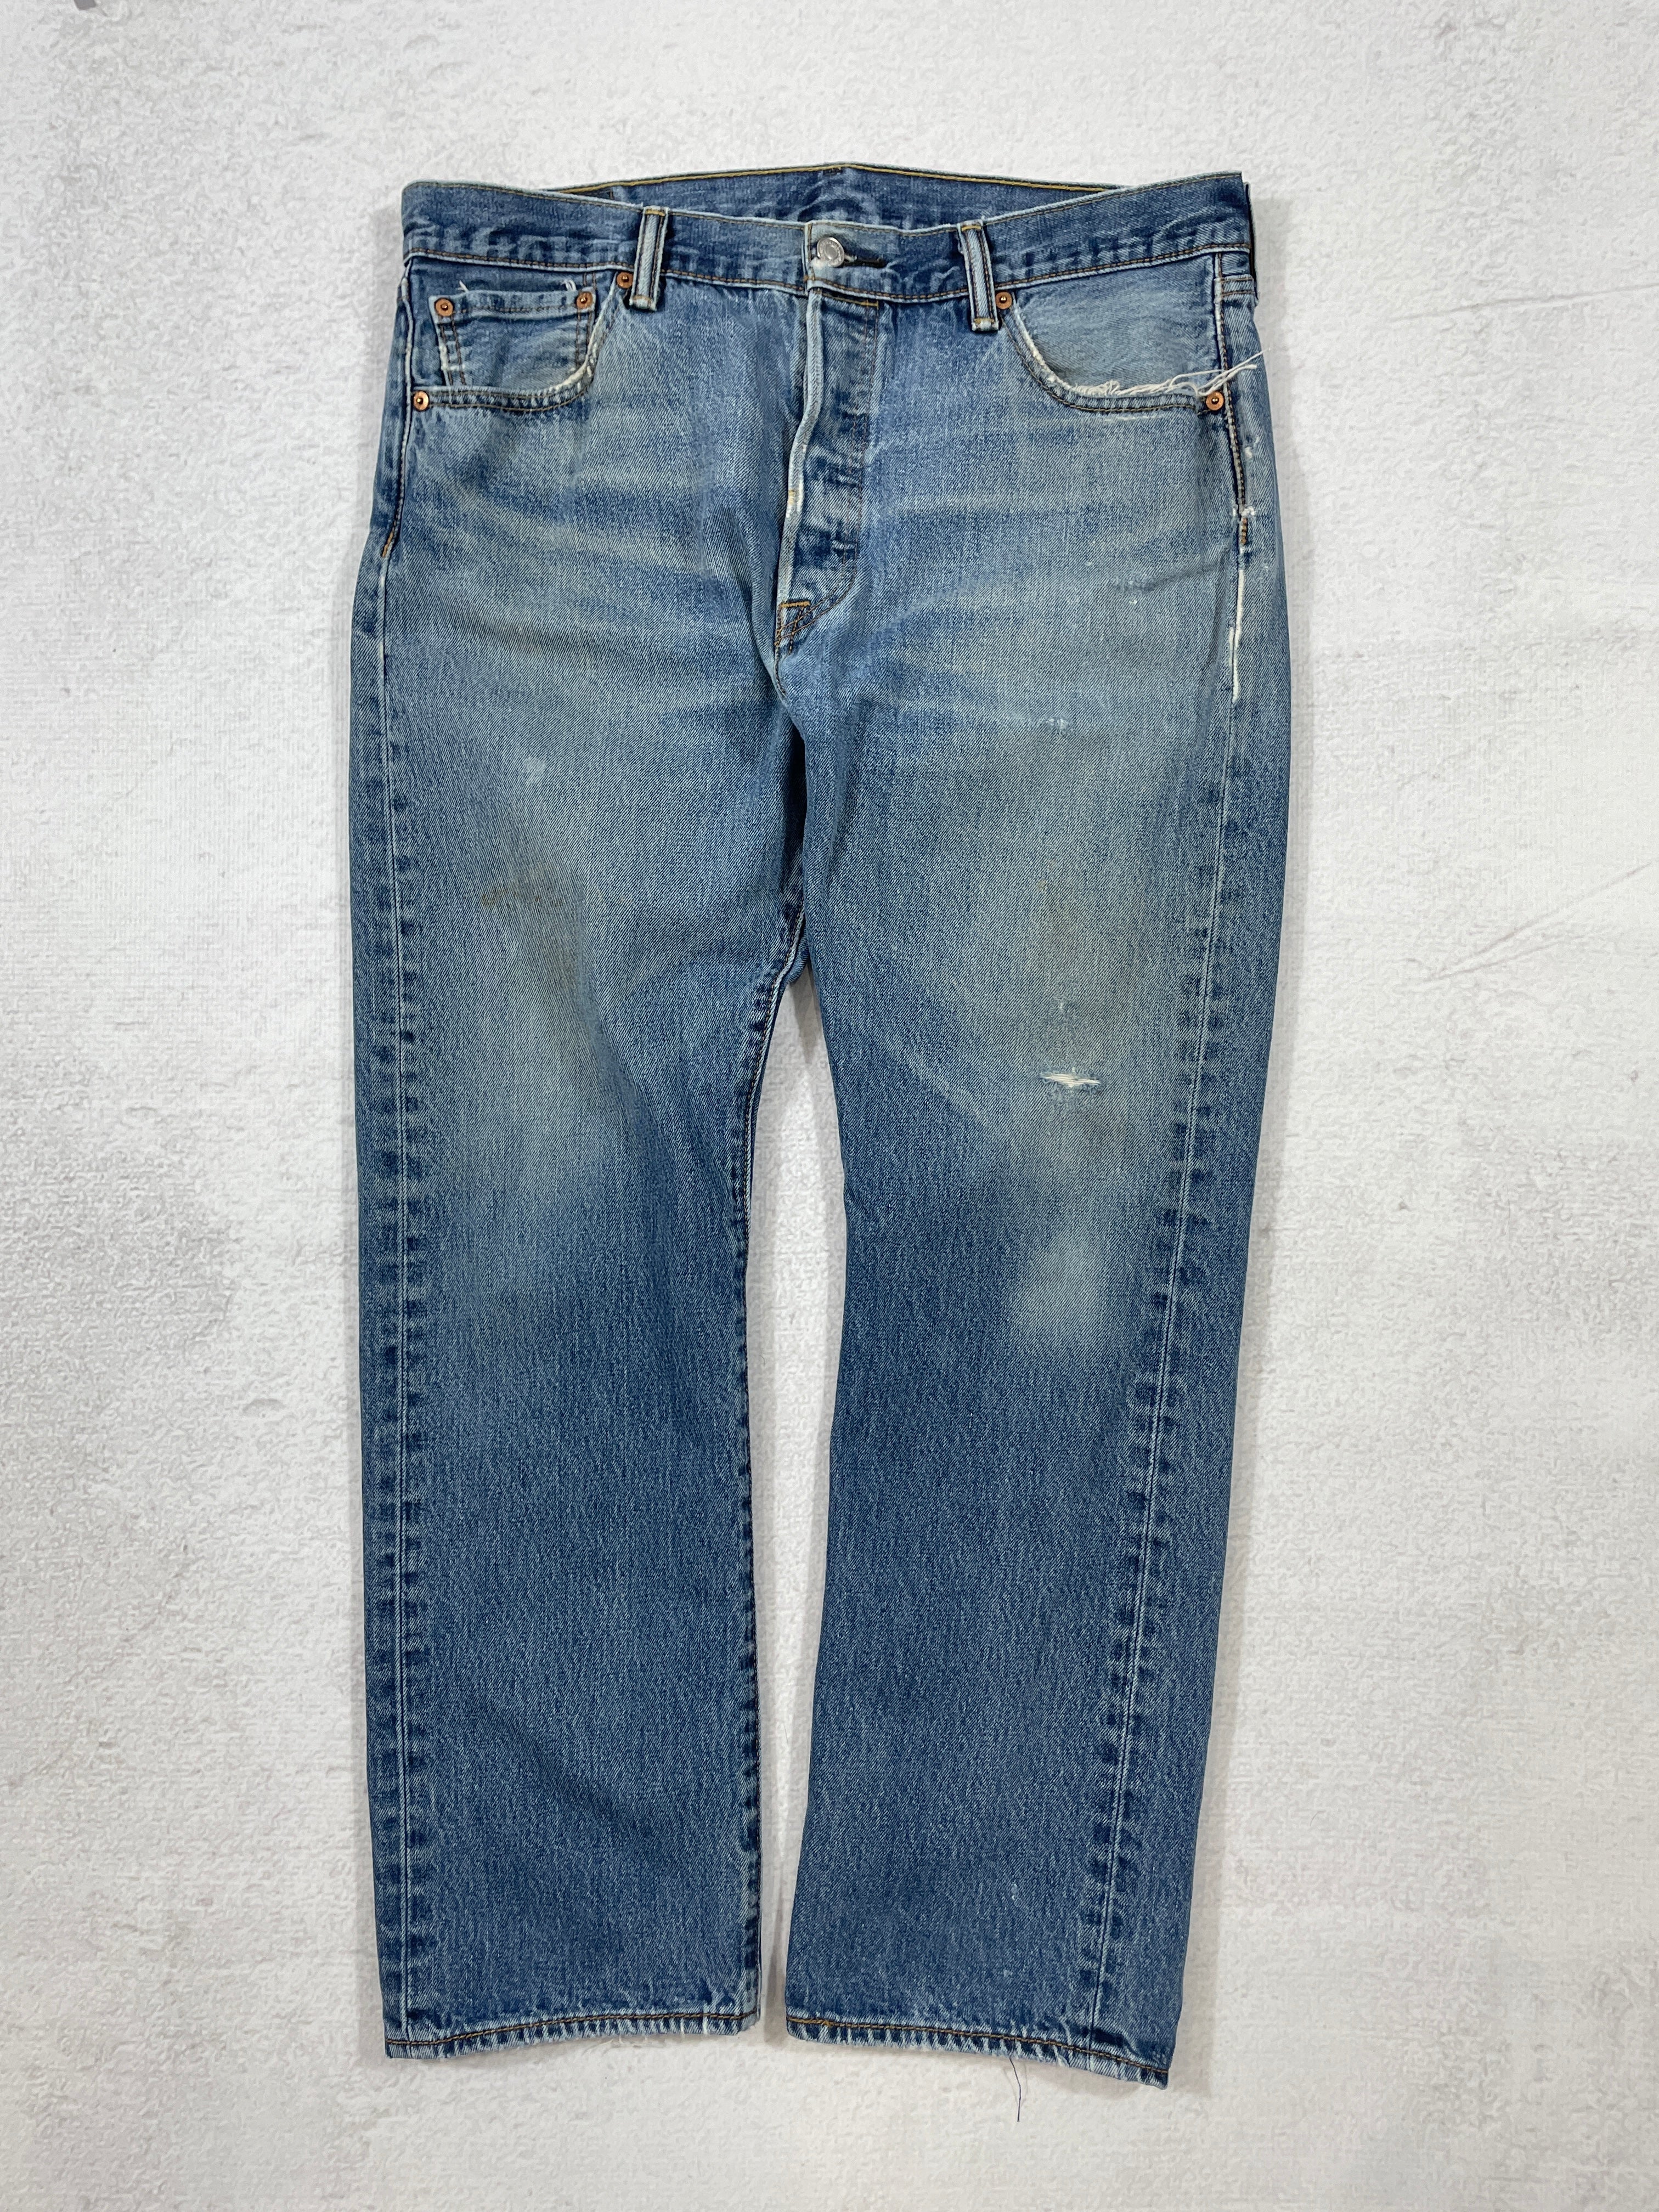 Vintage Levis 501 Jeans - Men's 36Wx30L